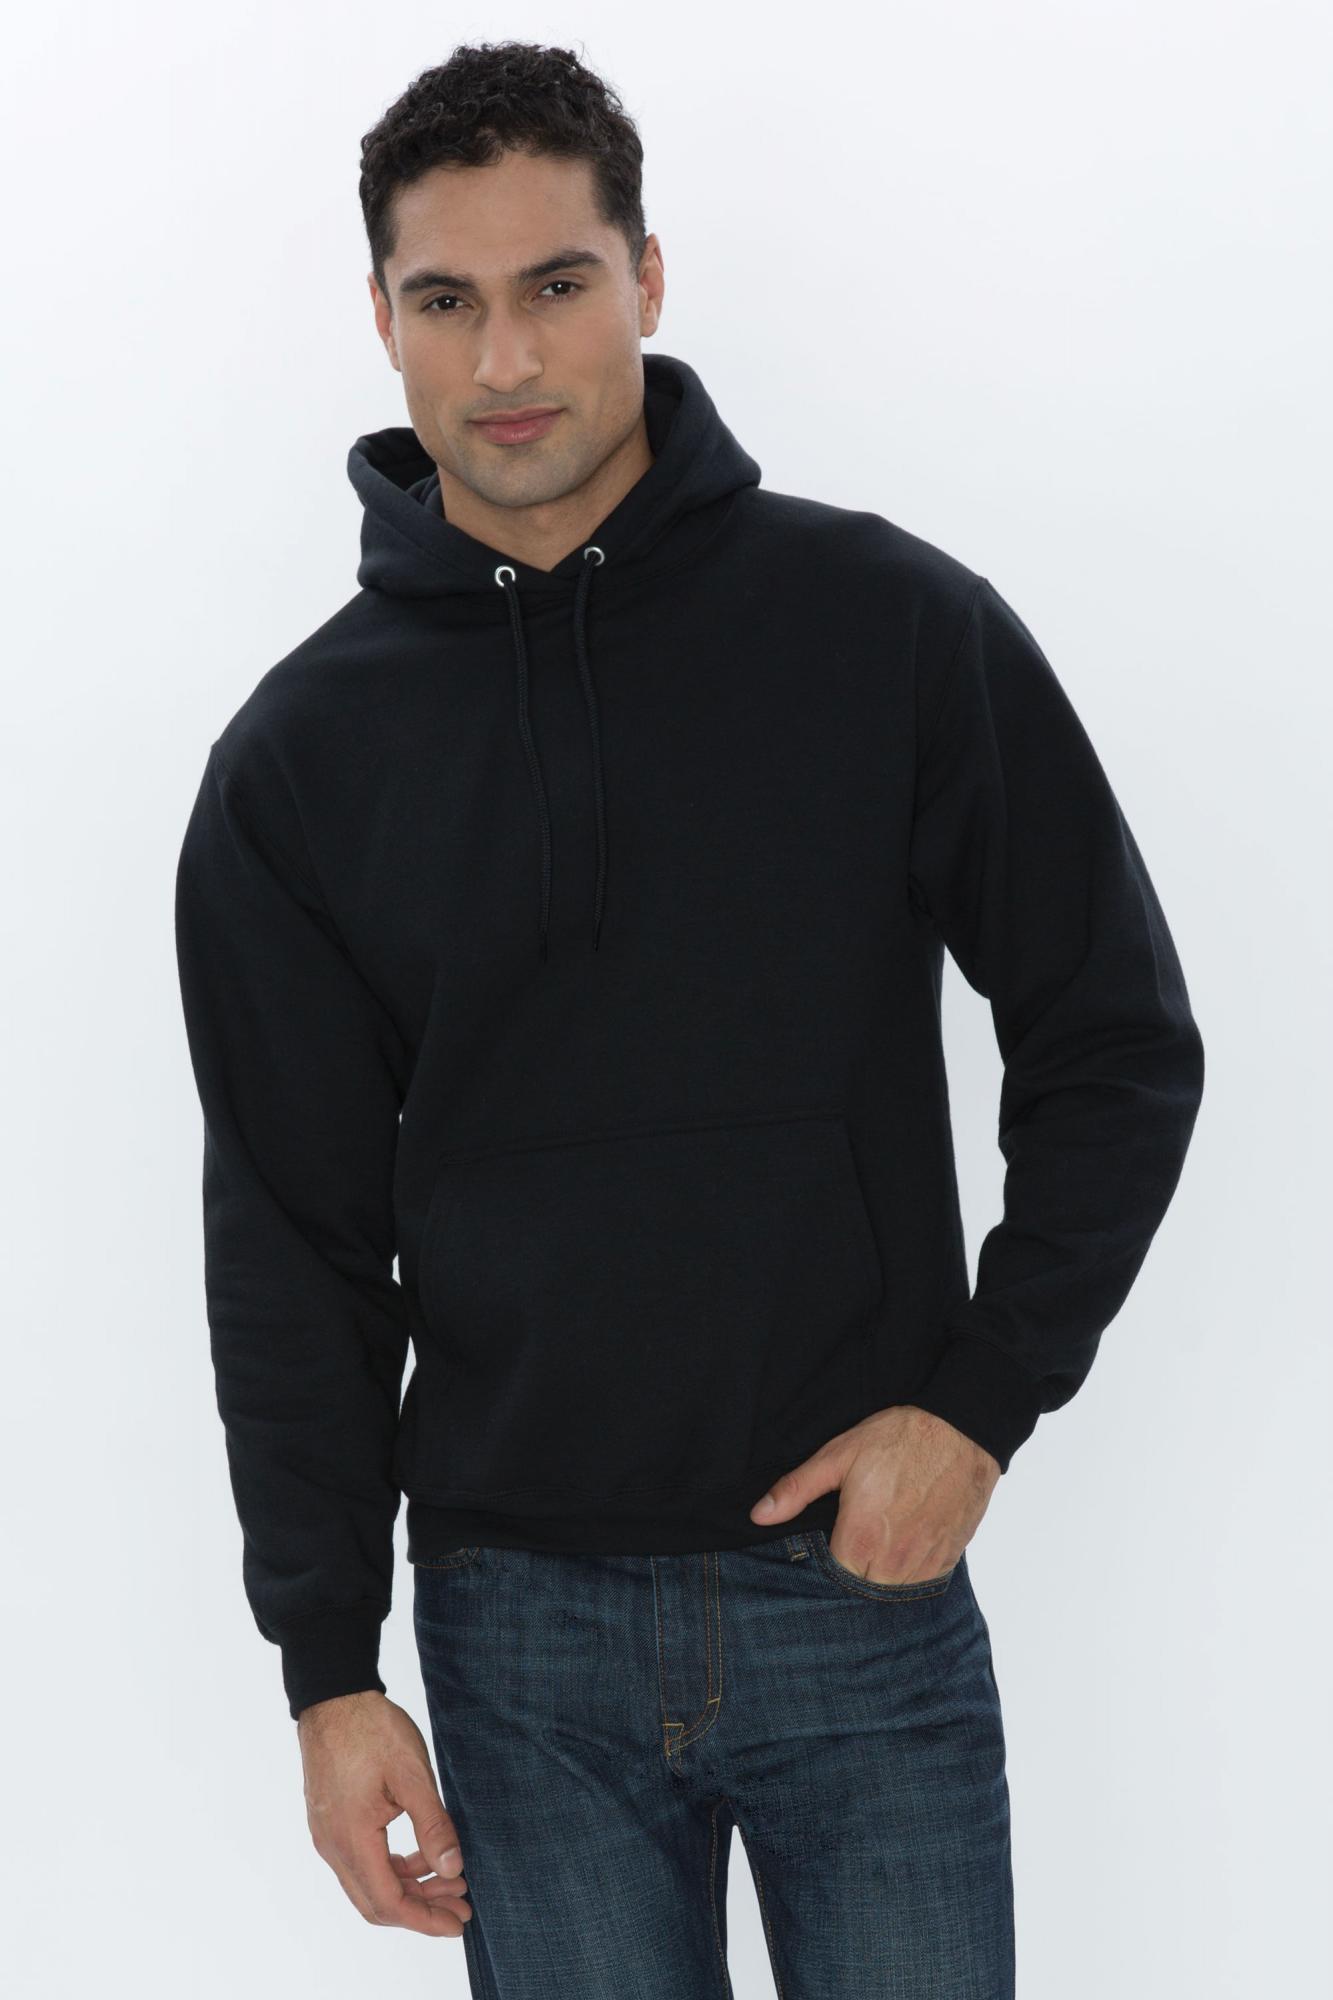 atc™ everyday fleece hooded sweatshirt - Newmarket